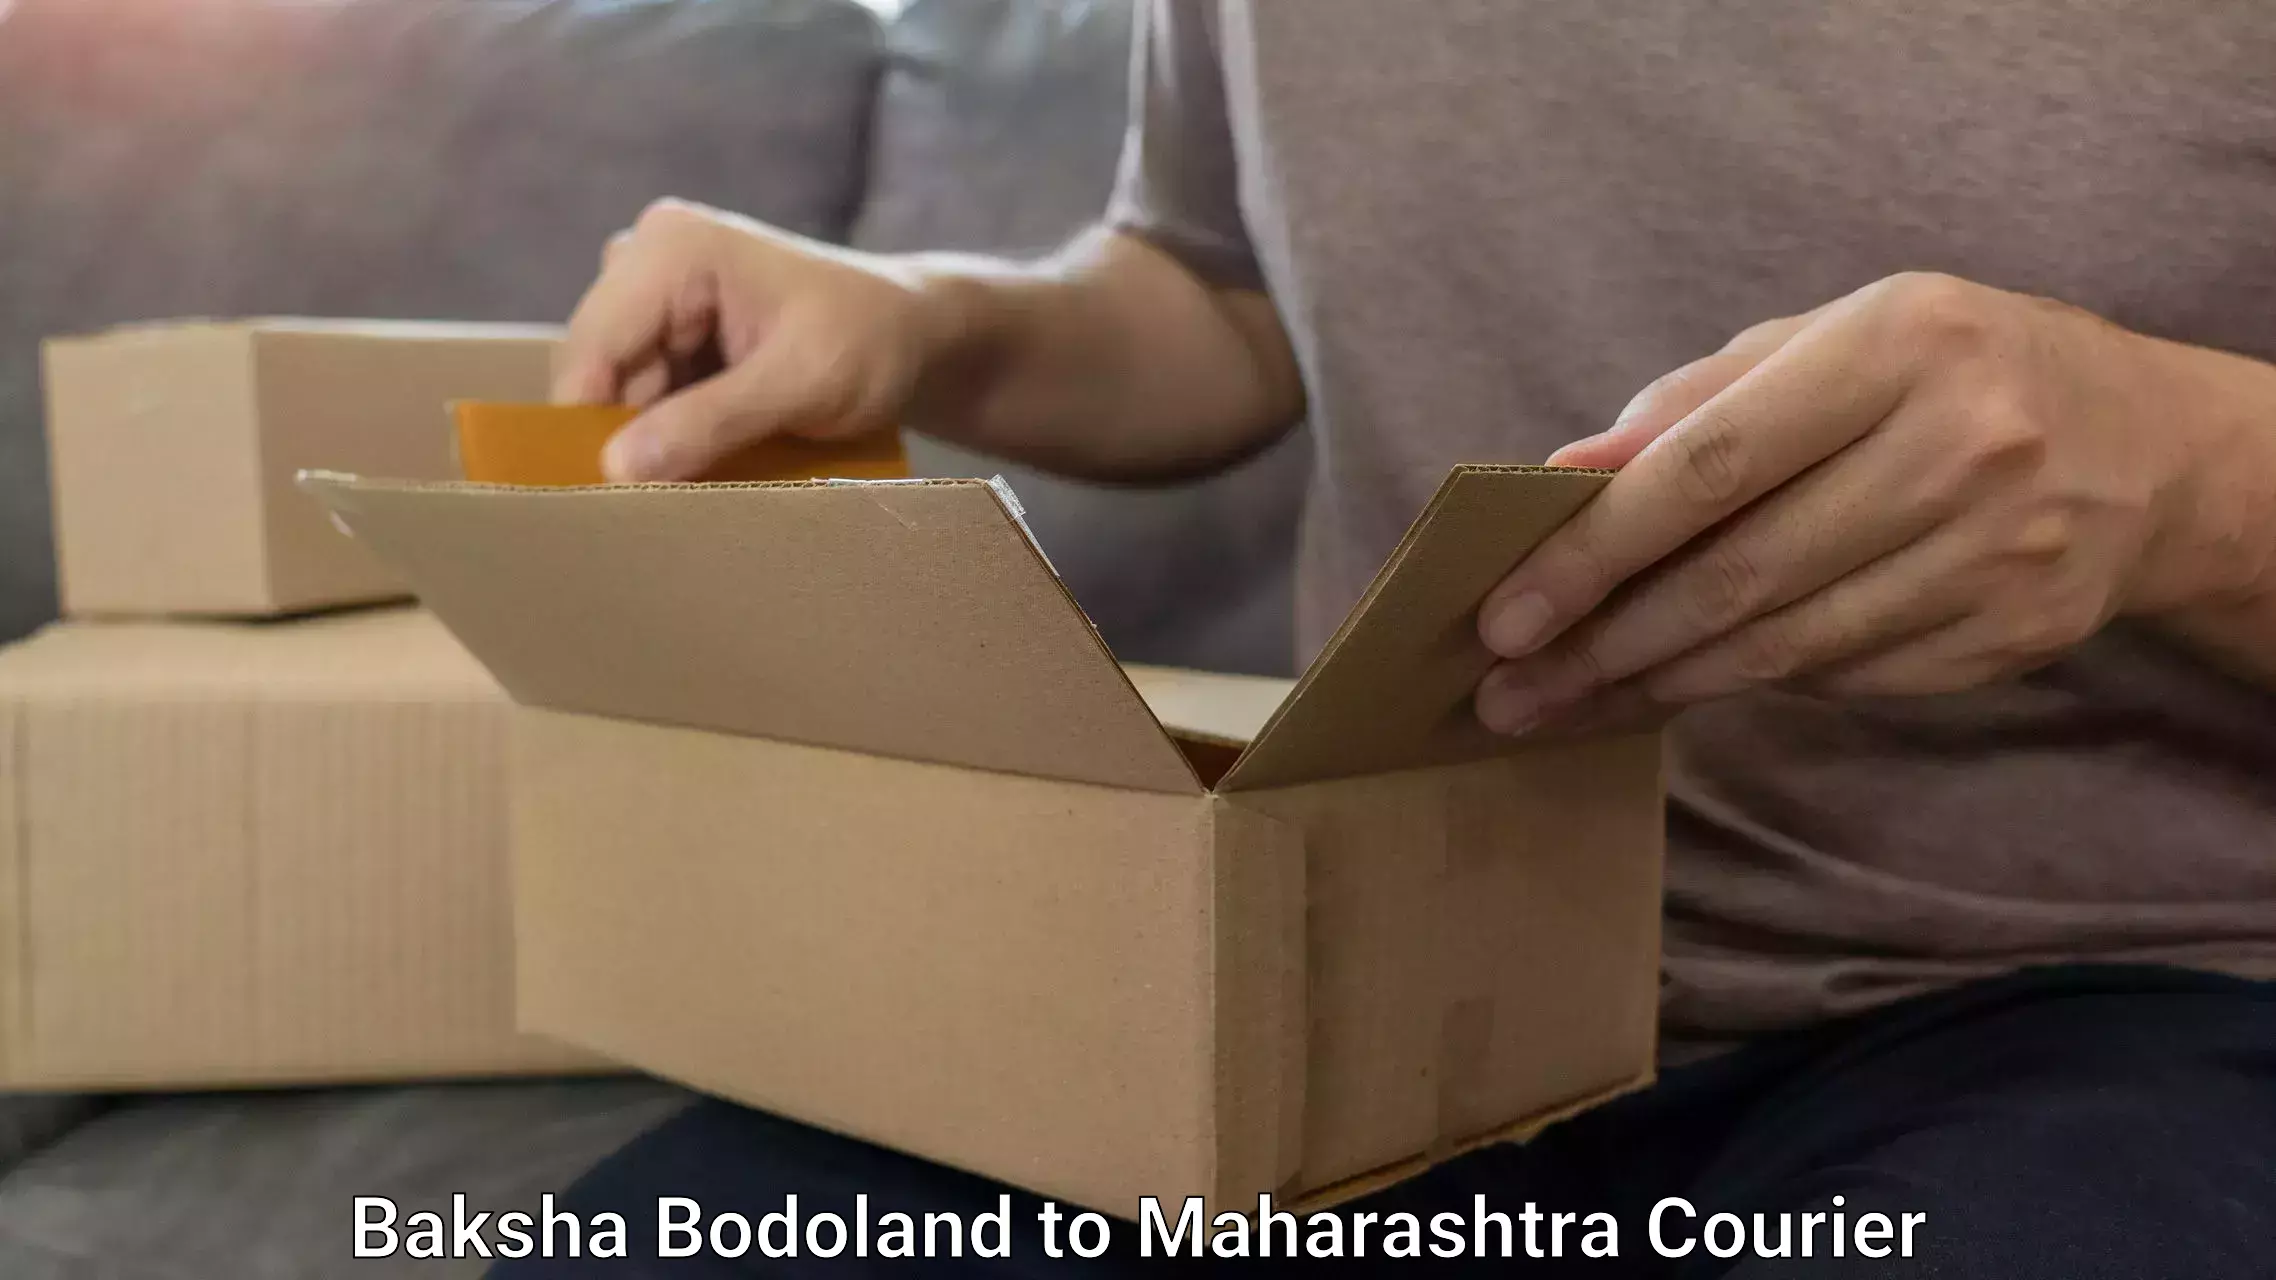 Luggage shipment processing Baksha Bodoland to Maharashtra